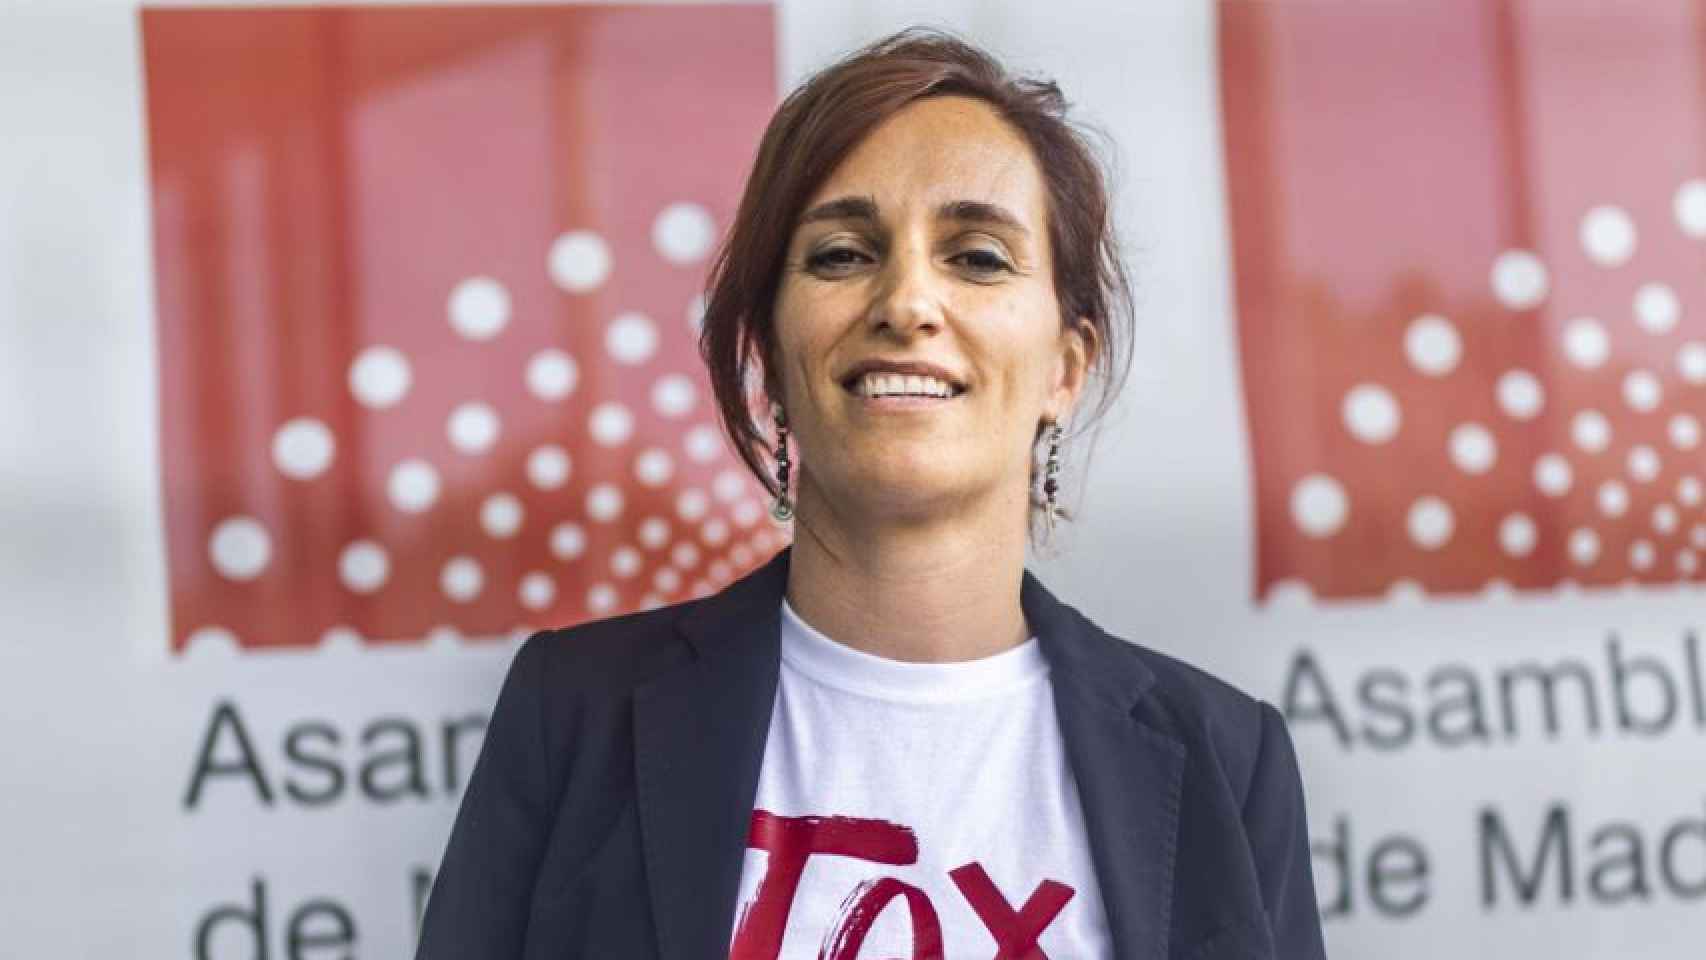 Mónica García y su camiseta pidiendo impuestos para los ricos en una imagen que compartió en redes.